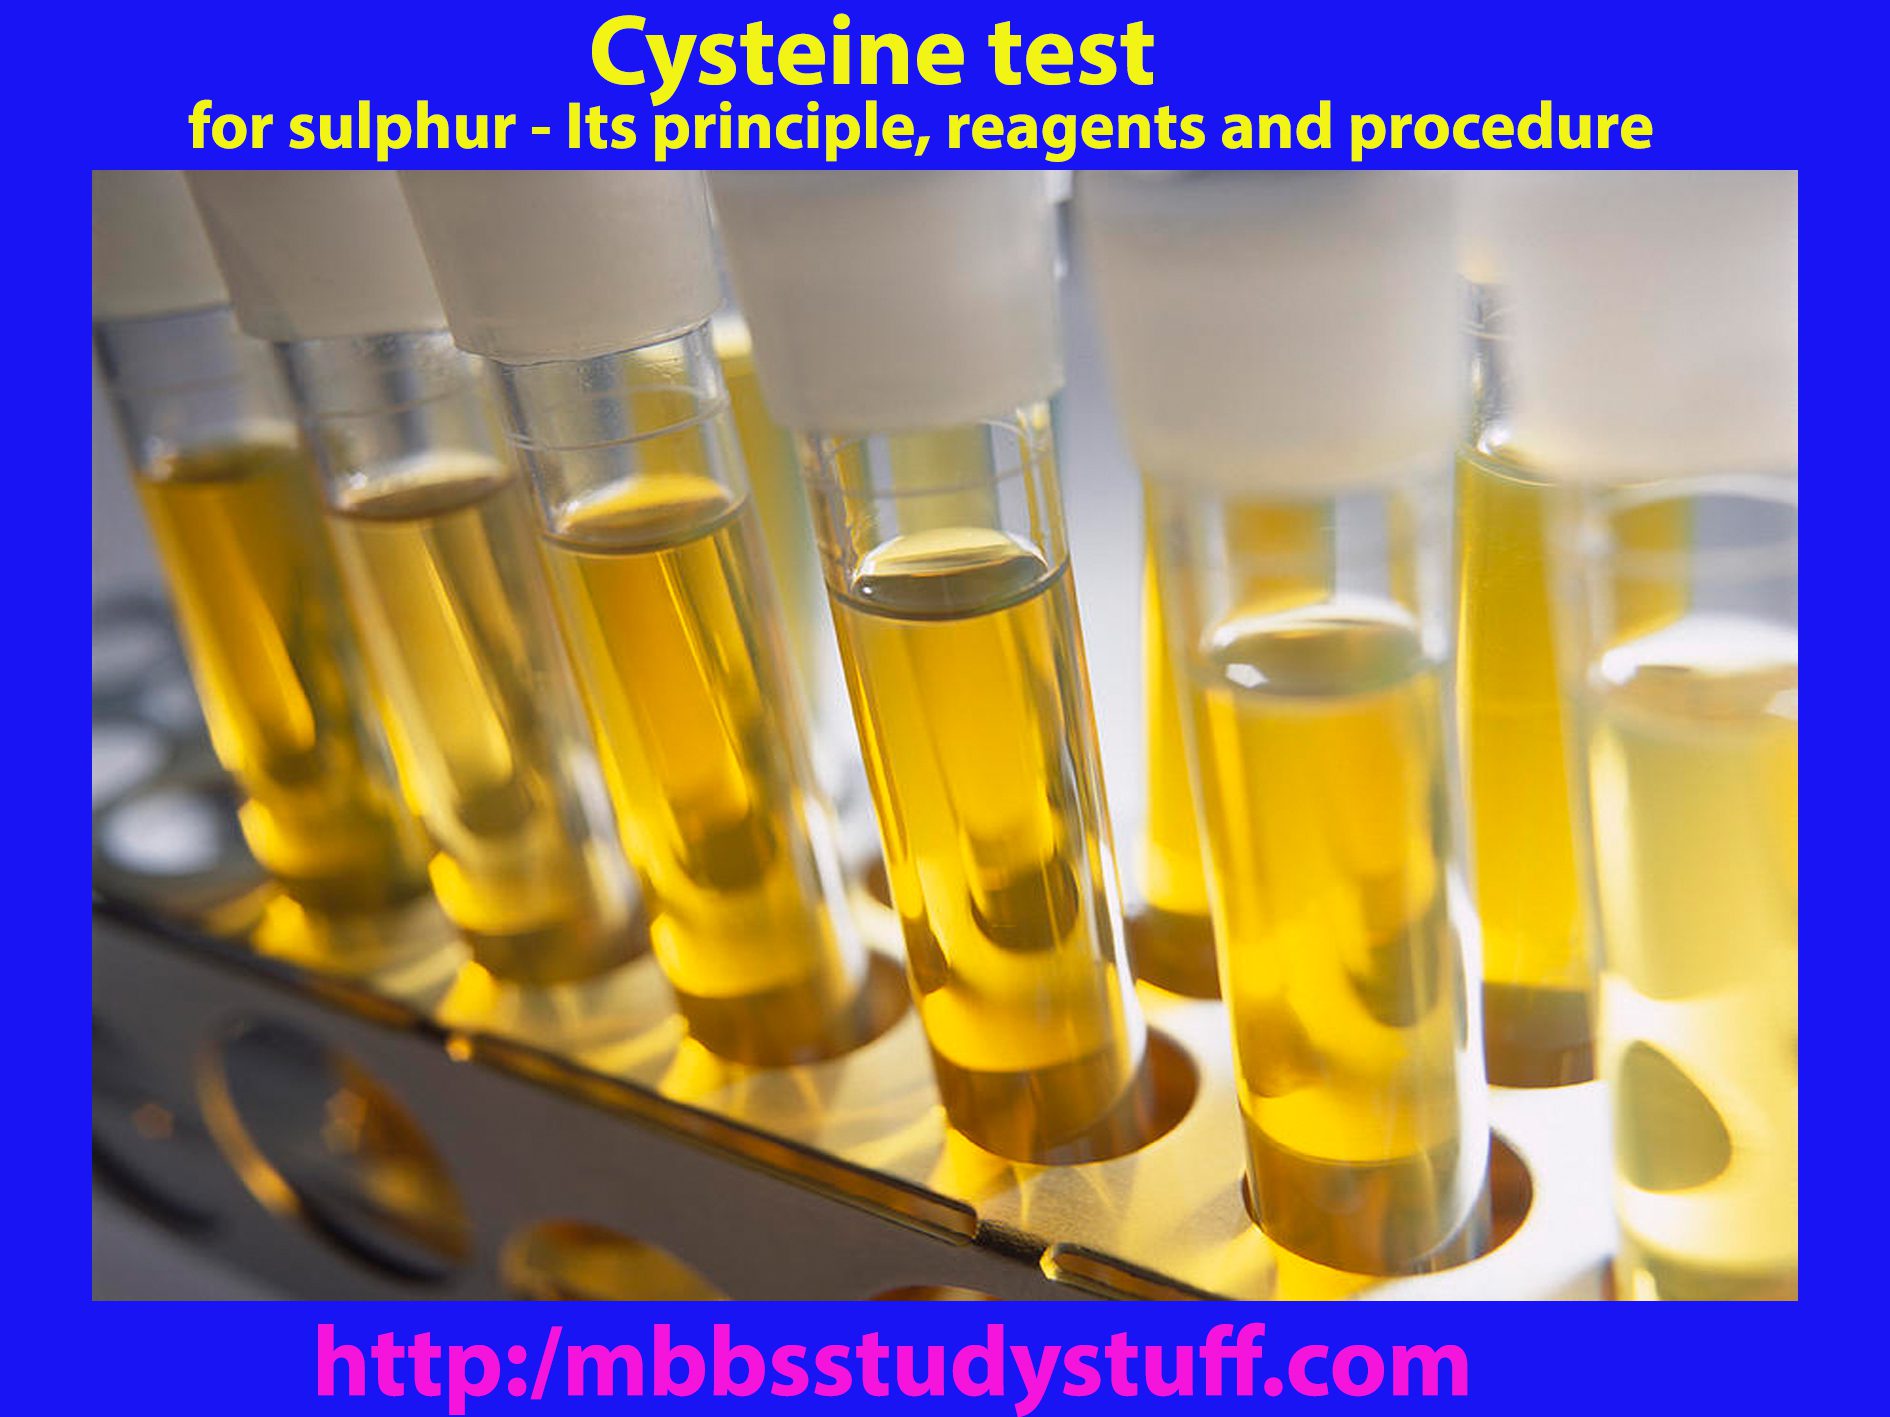 Cysteine test for sulphur